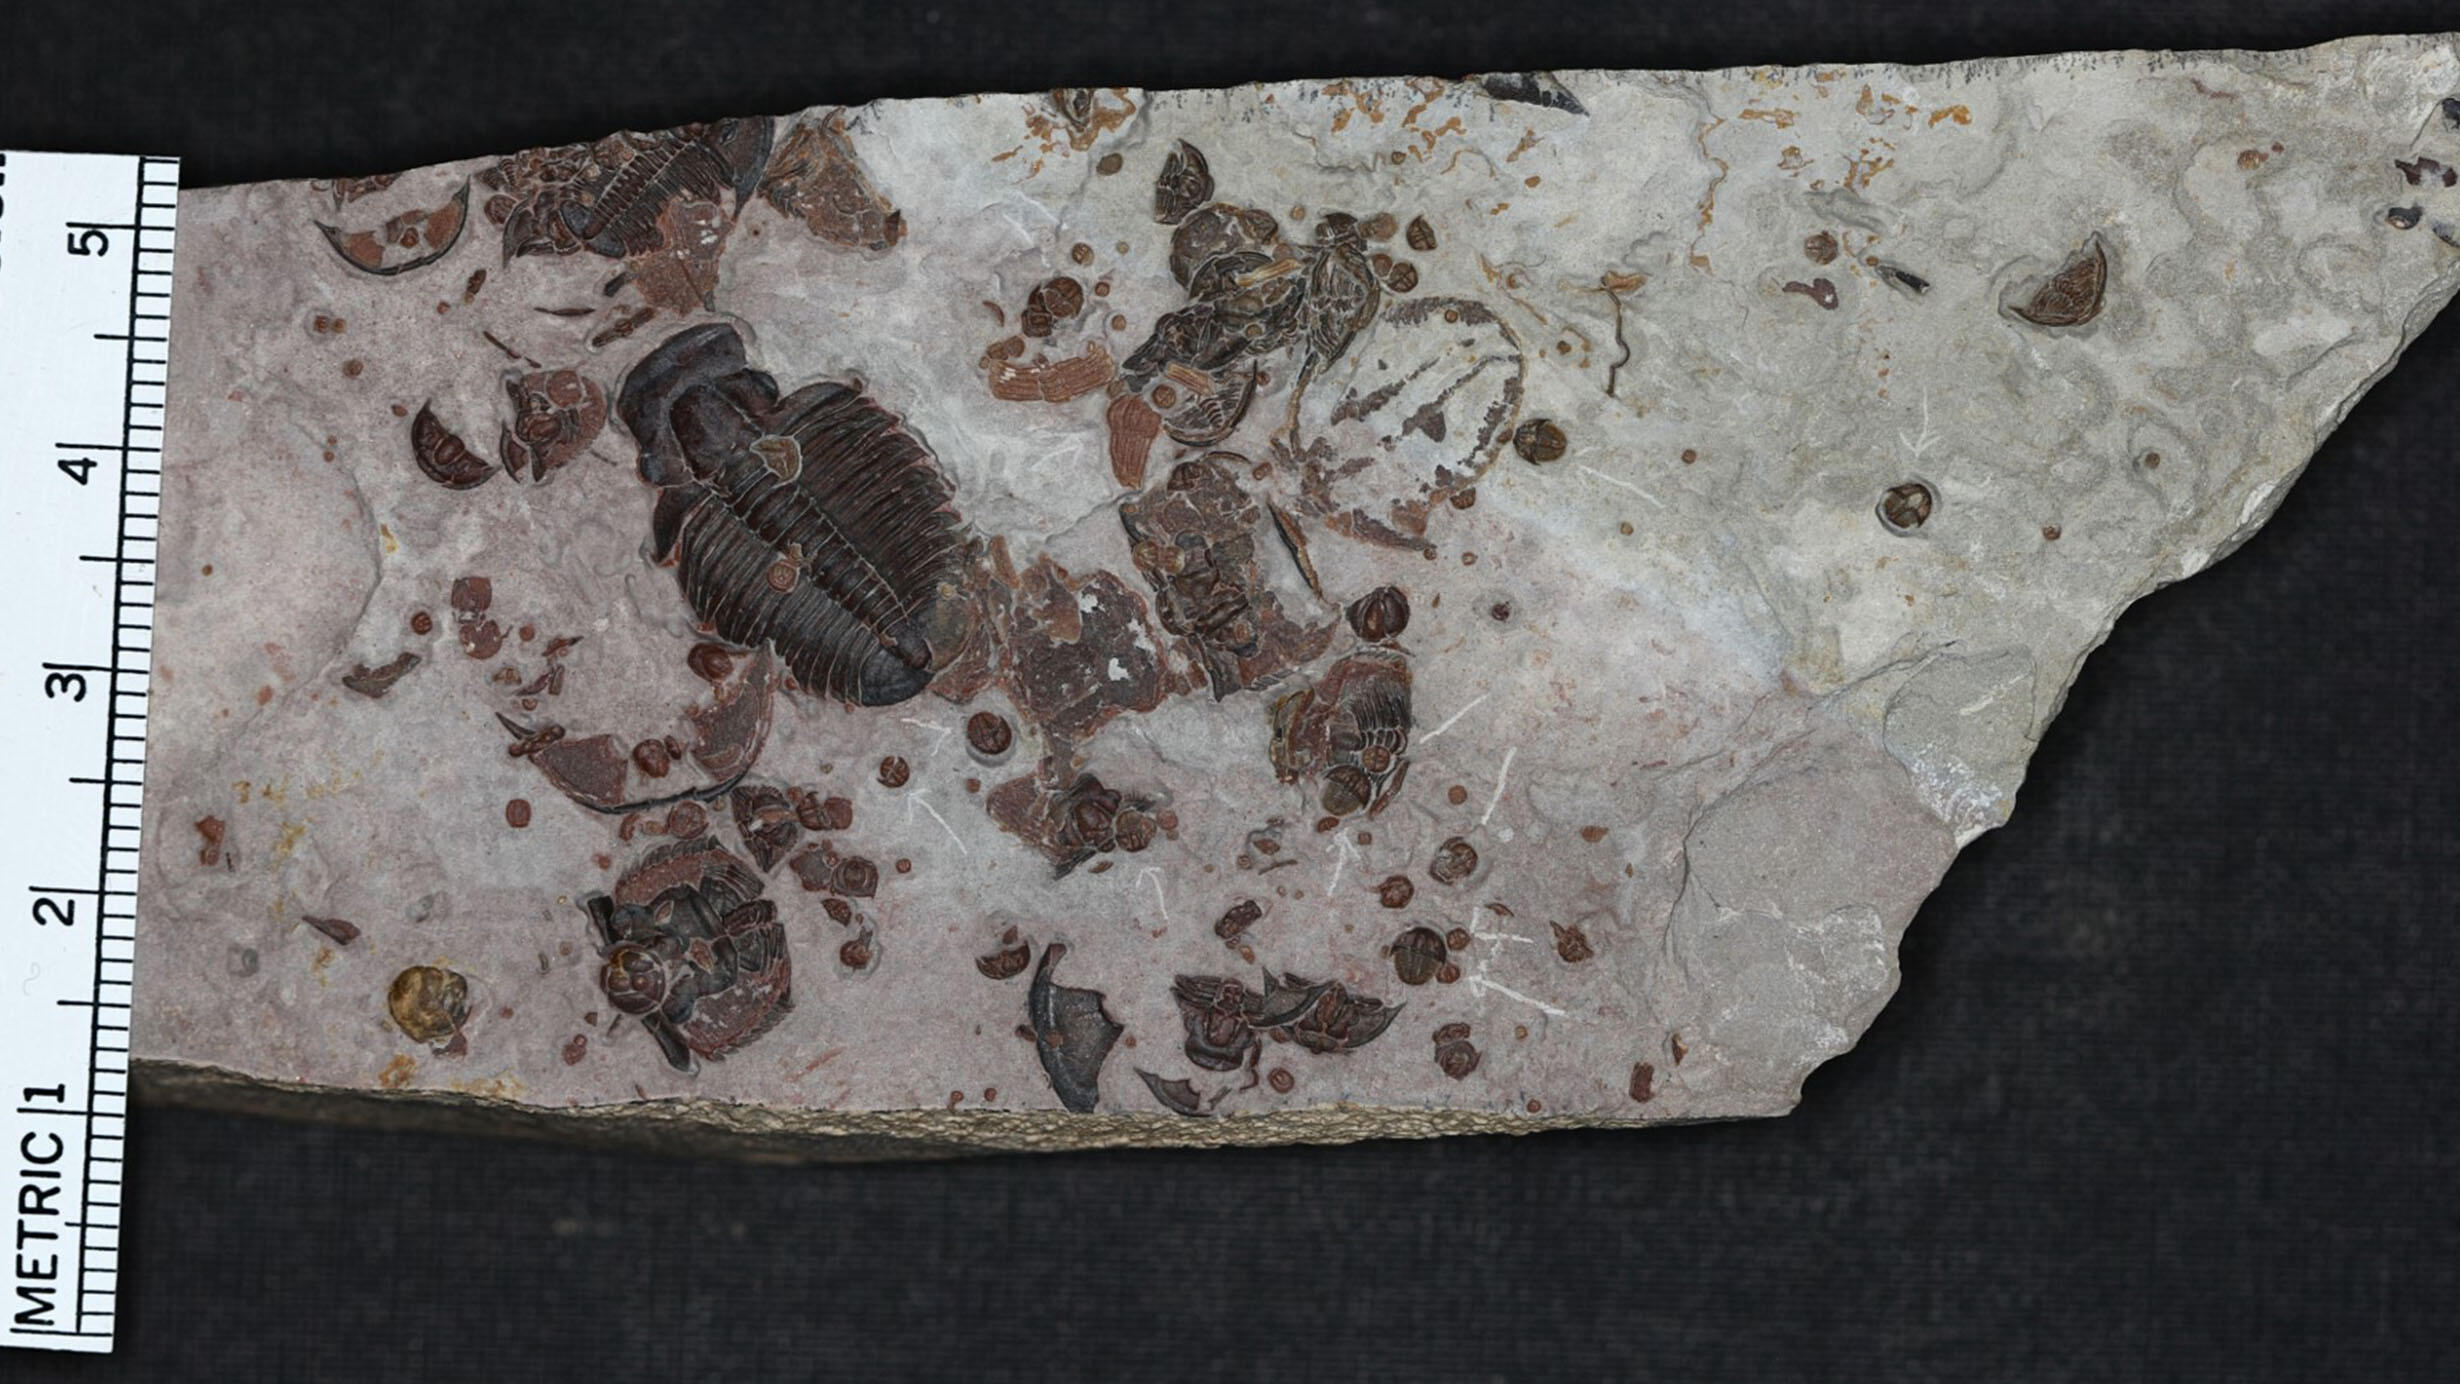 Multiple trilobite specimens embedded in a flat rock slab.